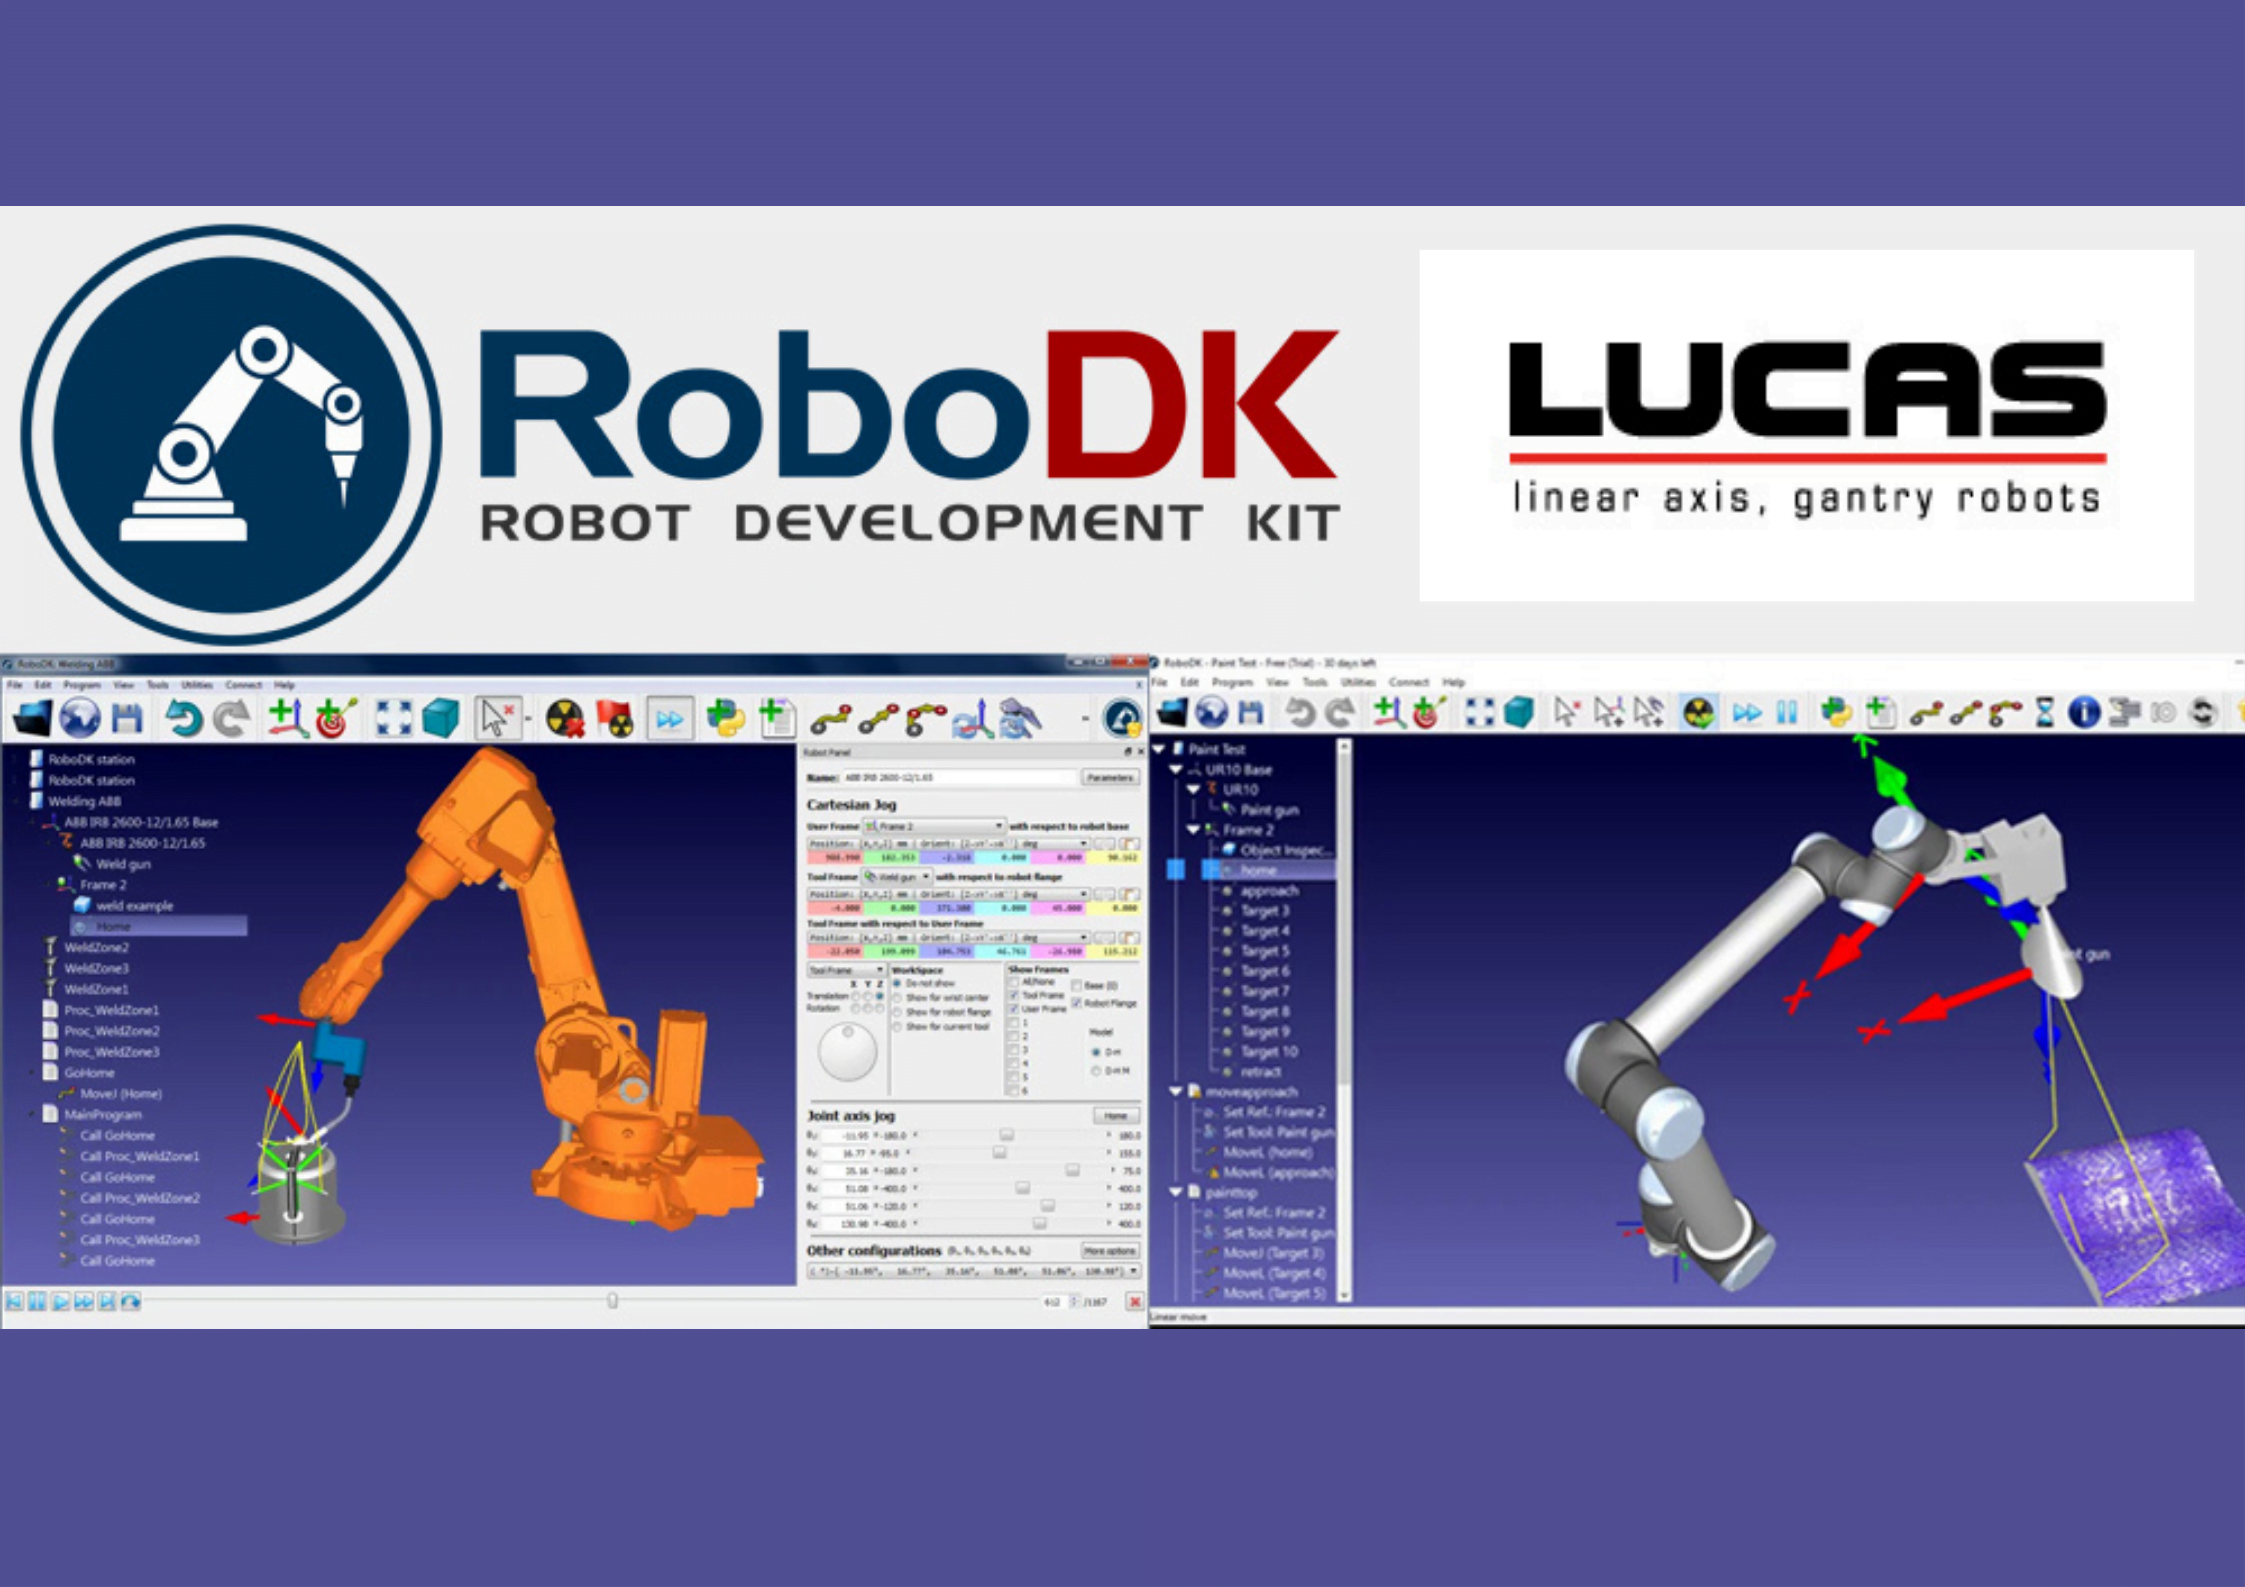 LUCAS et RoboDK lancent un partenariat sur le produit et sa distribution